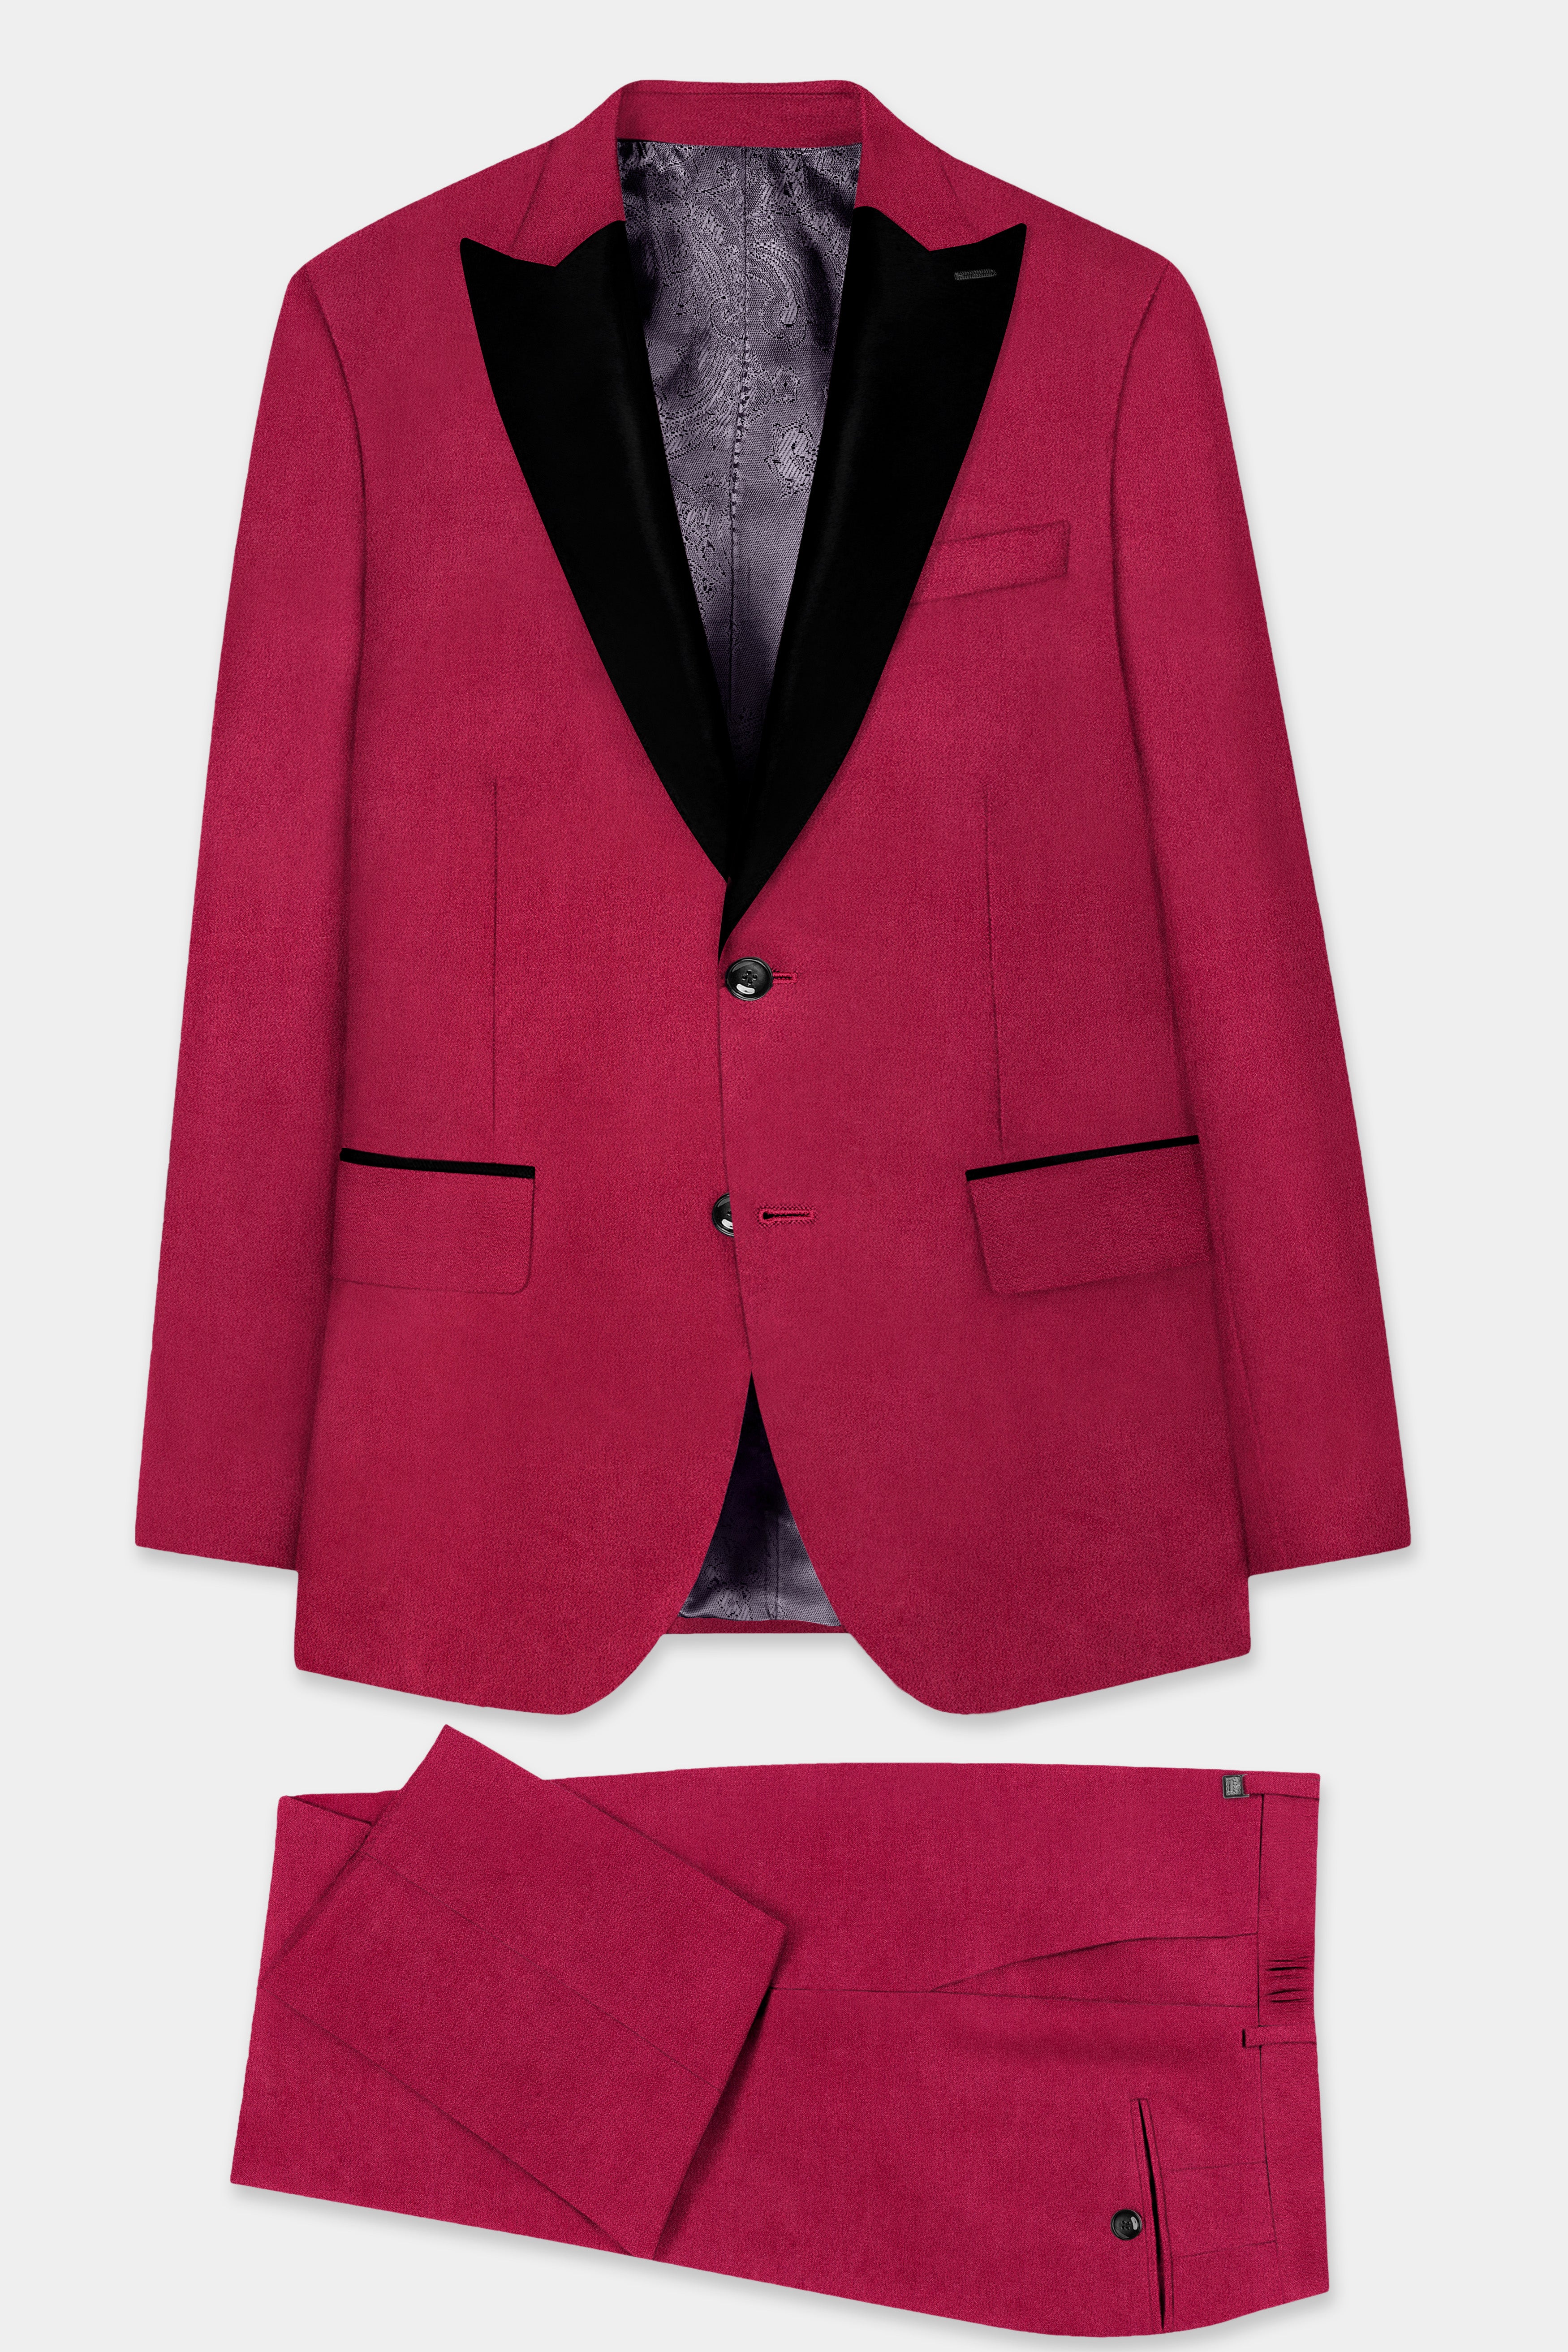 Claret Red Velvet Peak Collar Tuxedo Suit